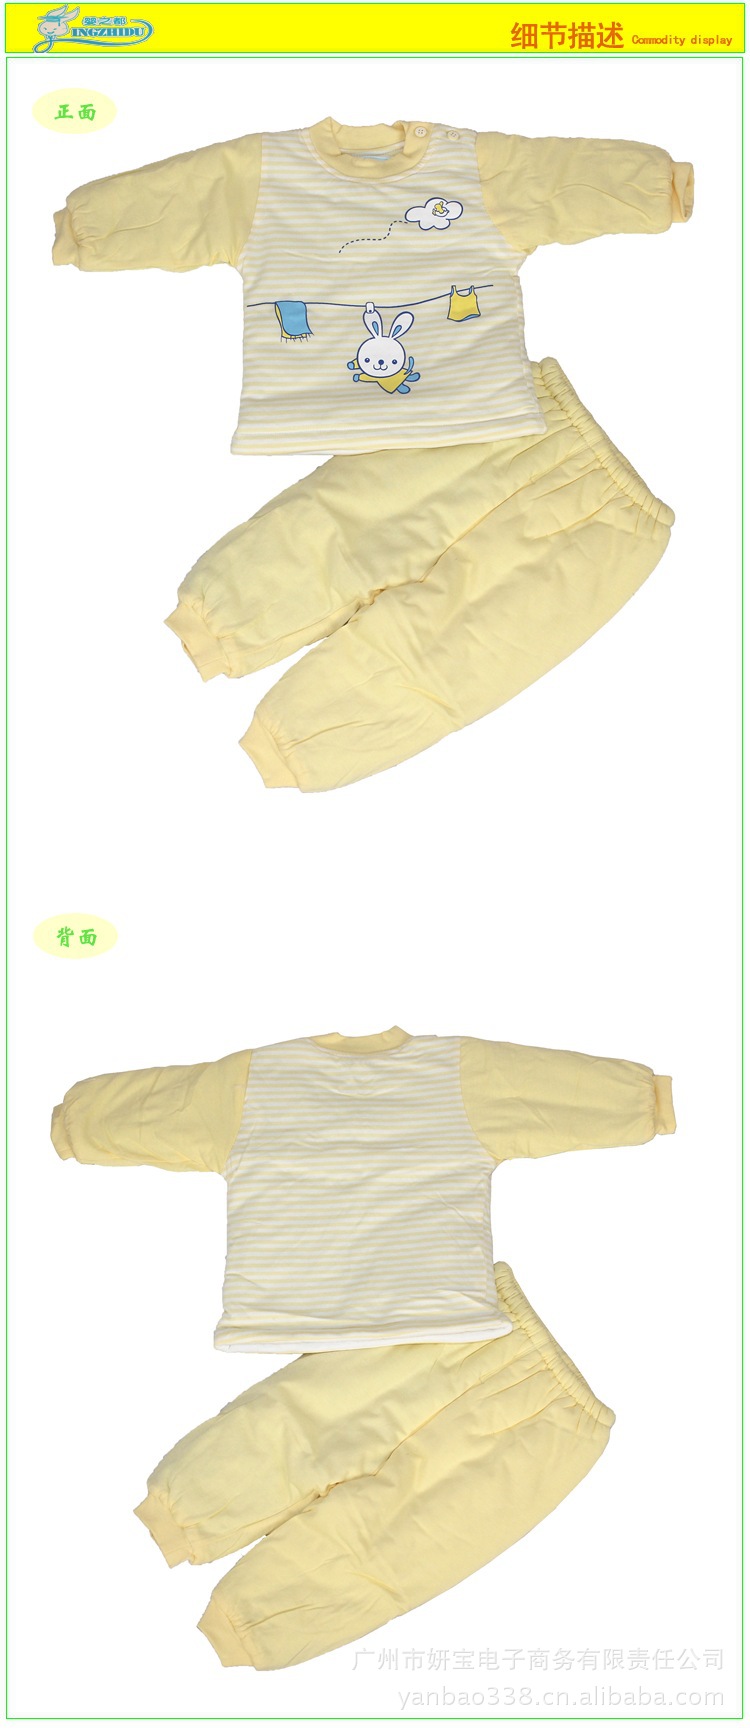 婴之都-宝宝织条夹棉肩钮套装 婴儿纯棉套装